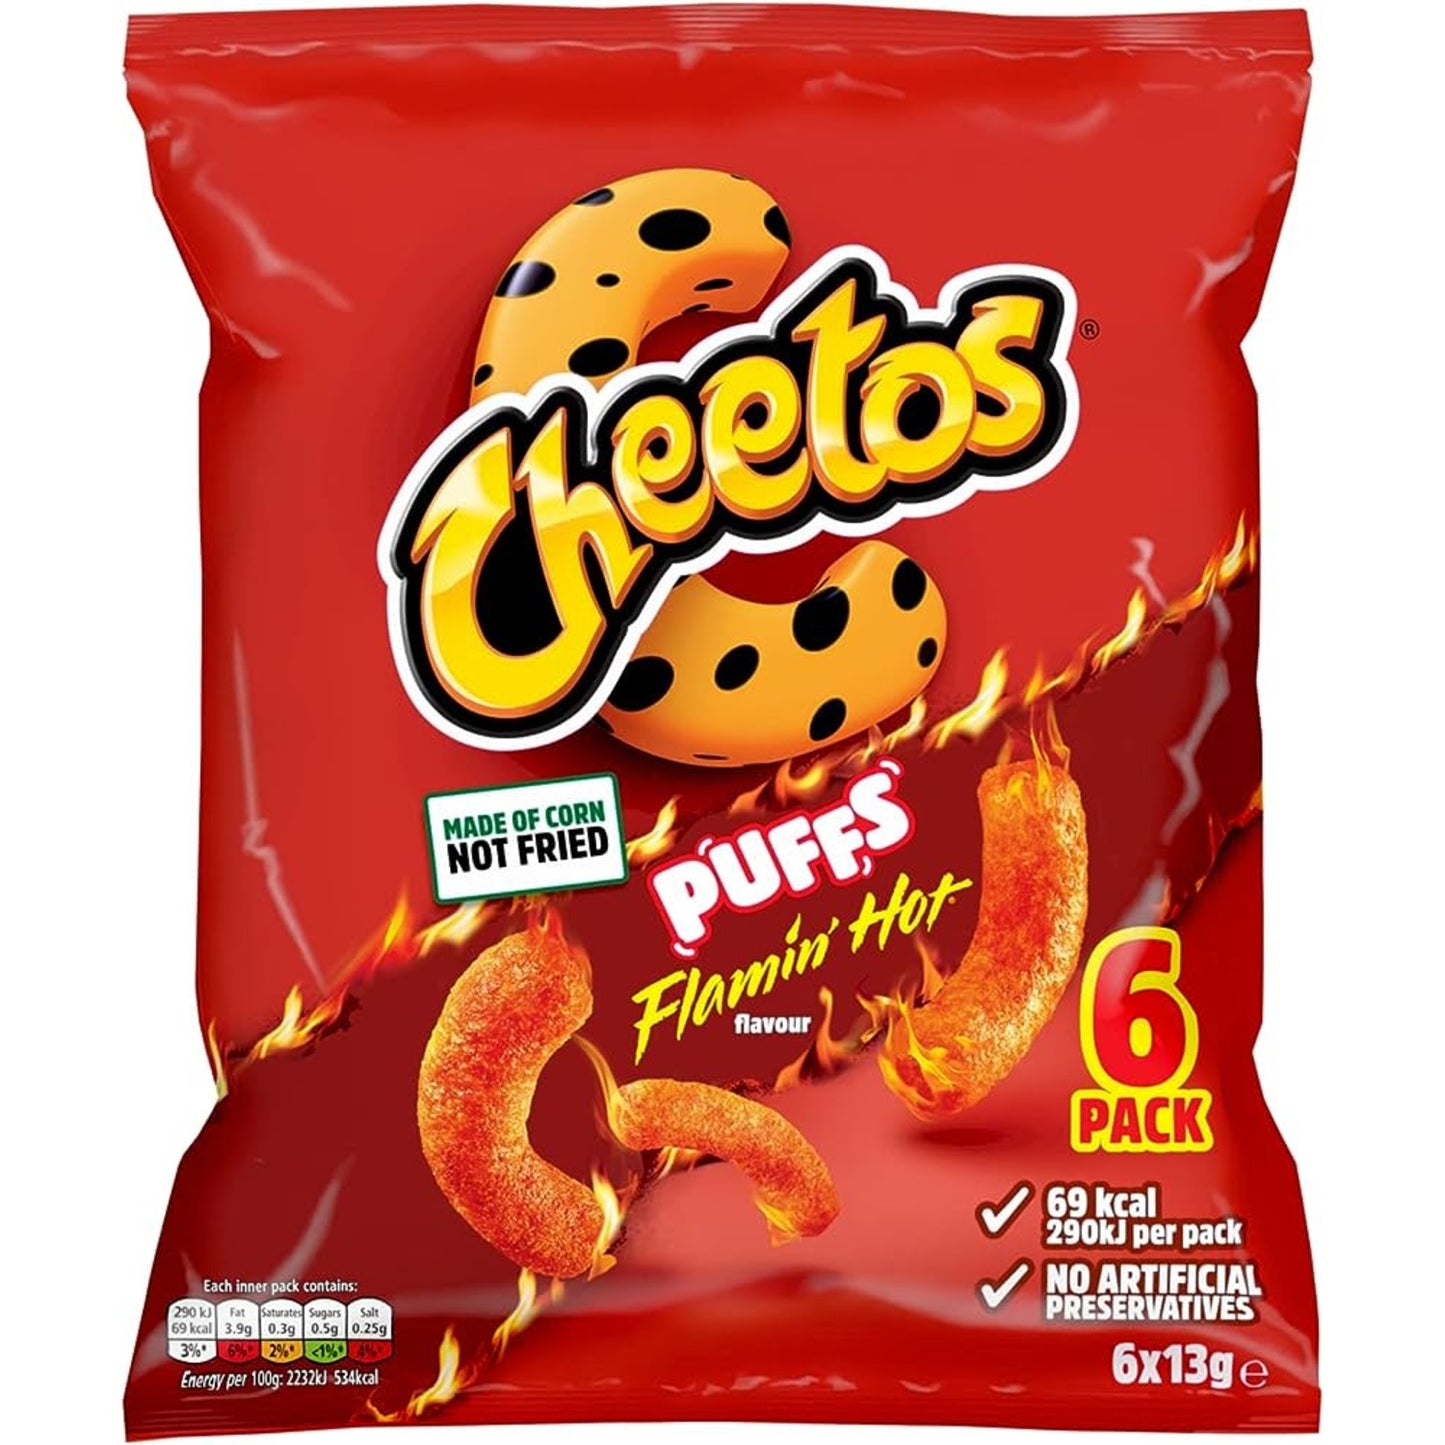 Cheetos Puffs Flamin Hot Snacks 6pk